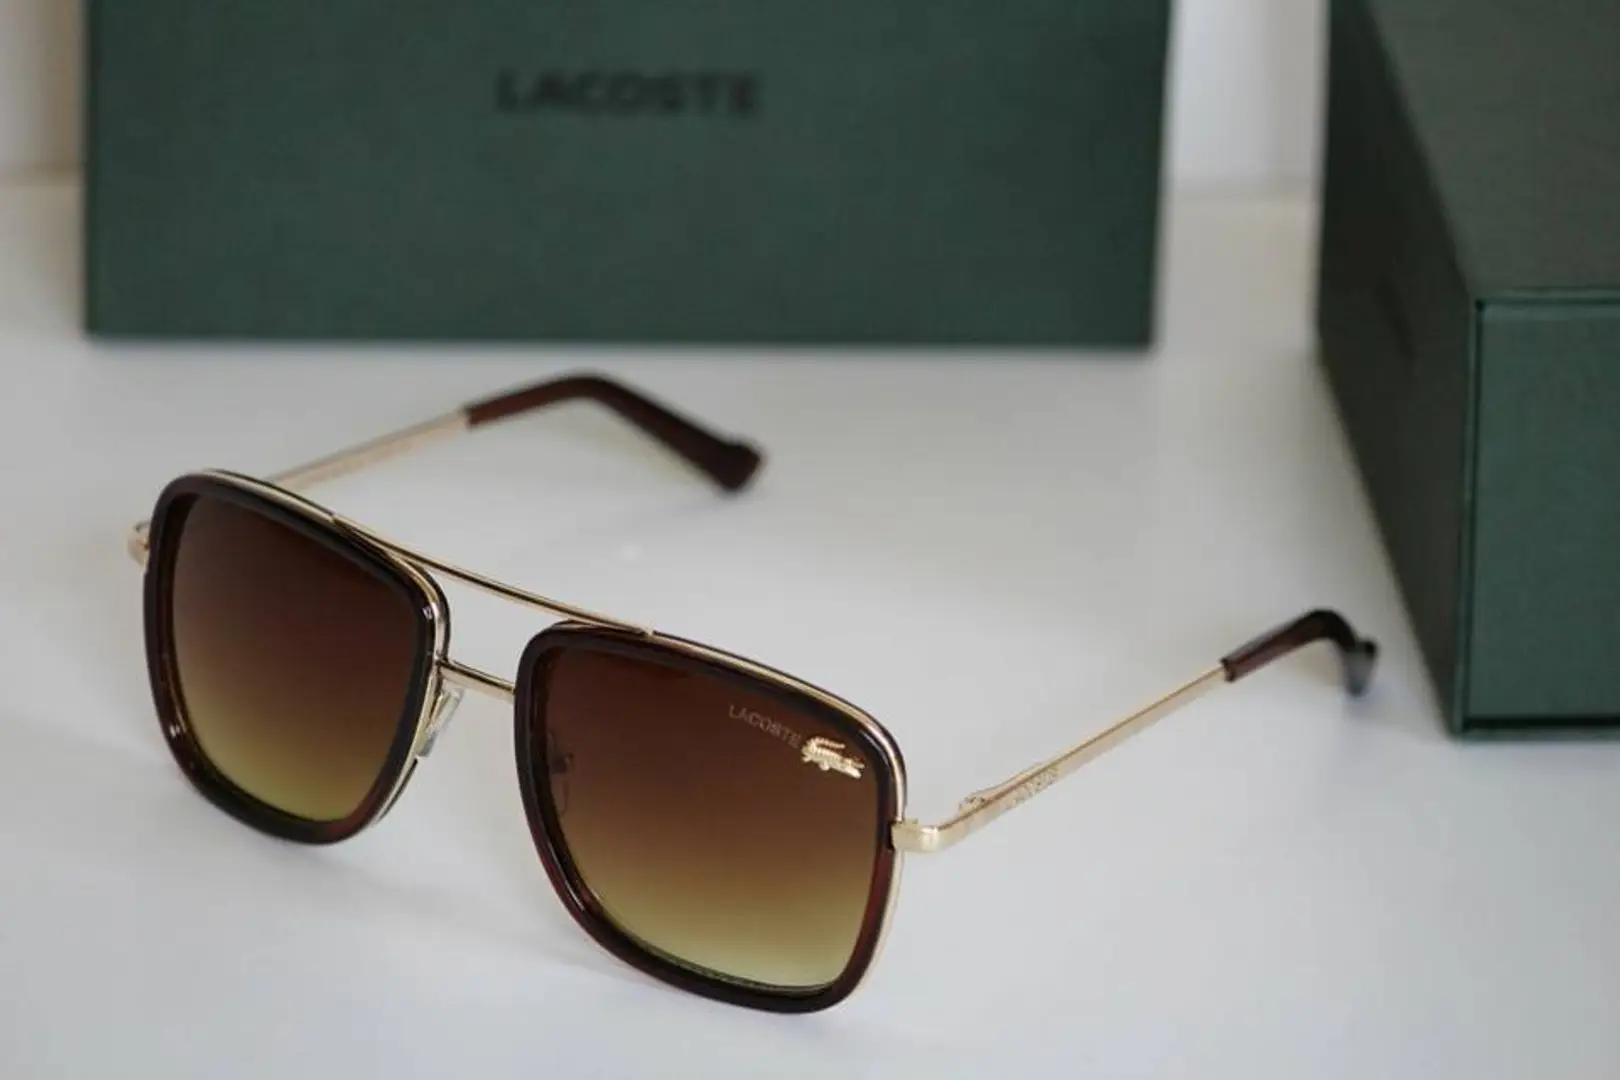 lacoste sunglasses price